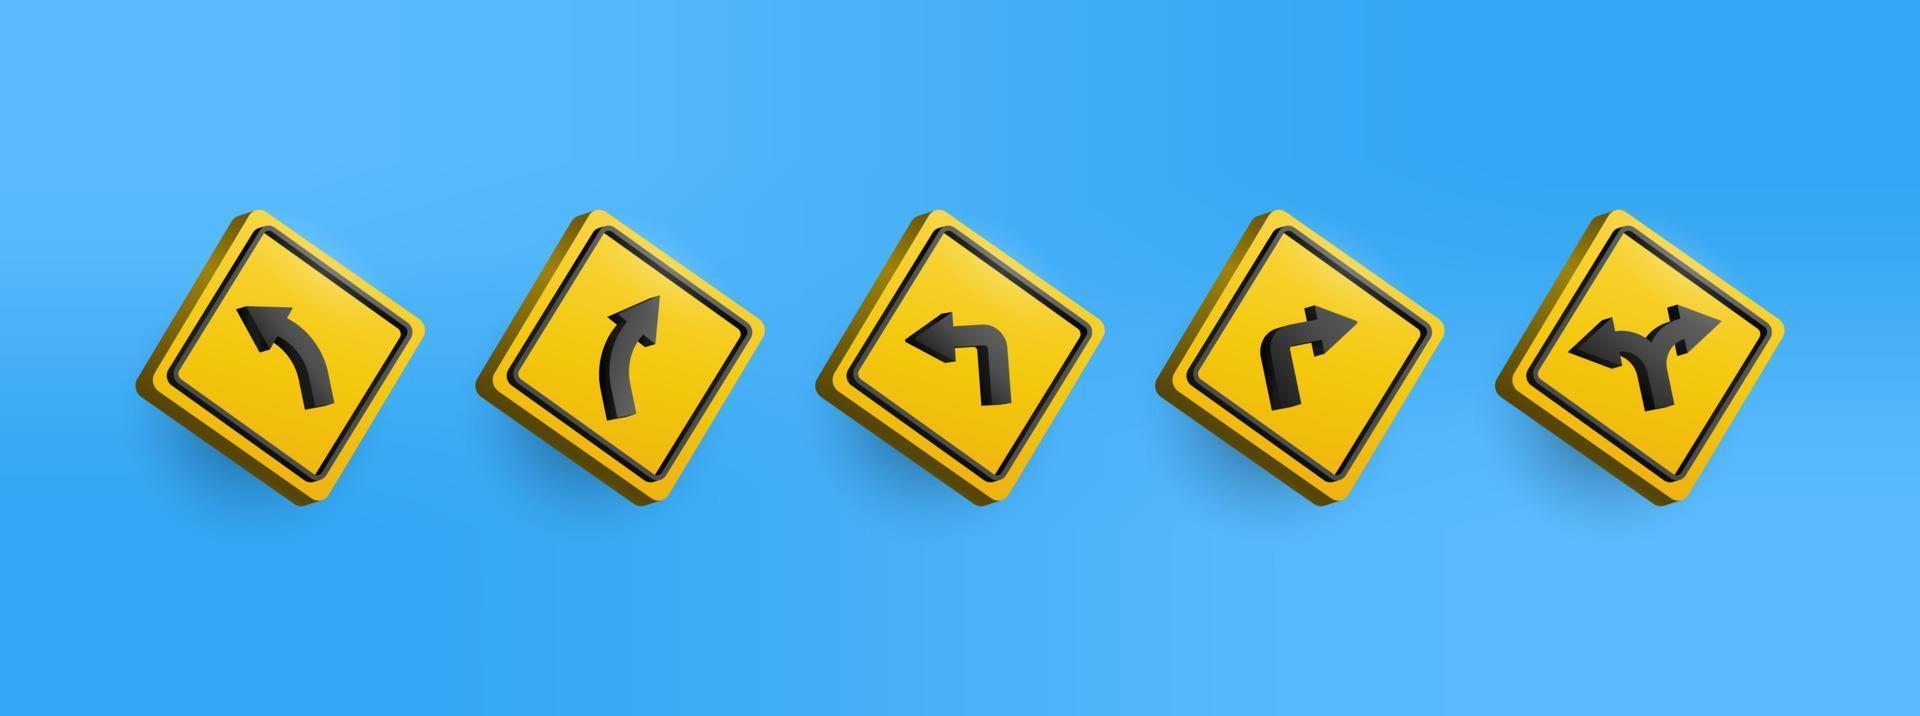 Conjunto de colección de iconos de señal de tráfico de advertencia amarilla 3d. ilustración vectorial de las flechas de las señales de tráfico direcciones de conducción fácil de editar vector